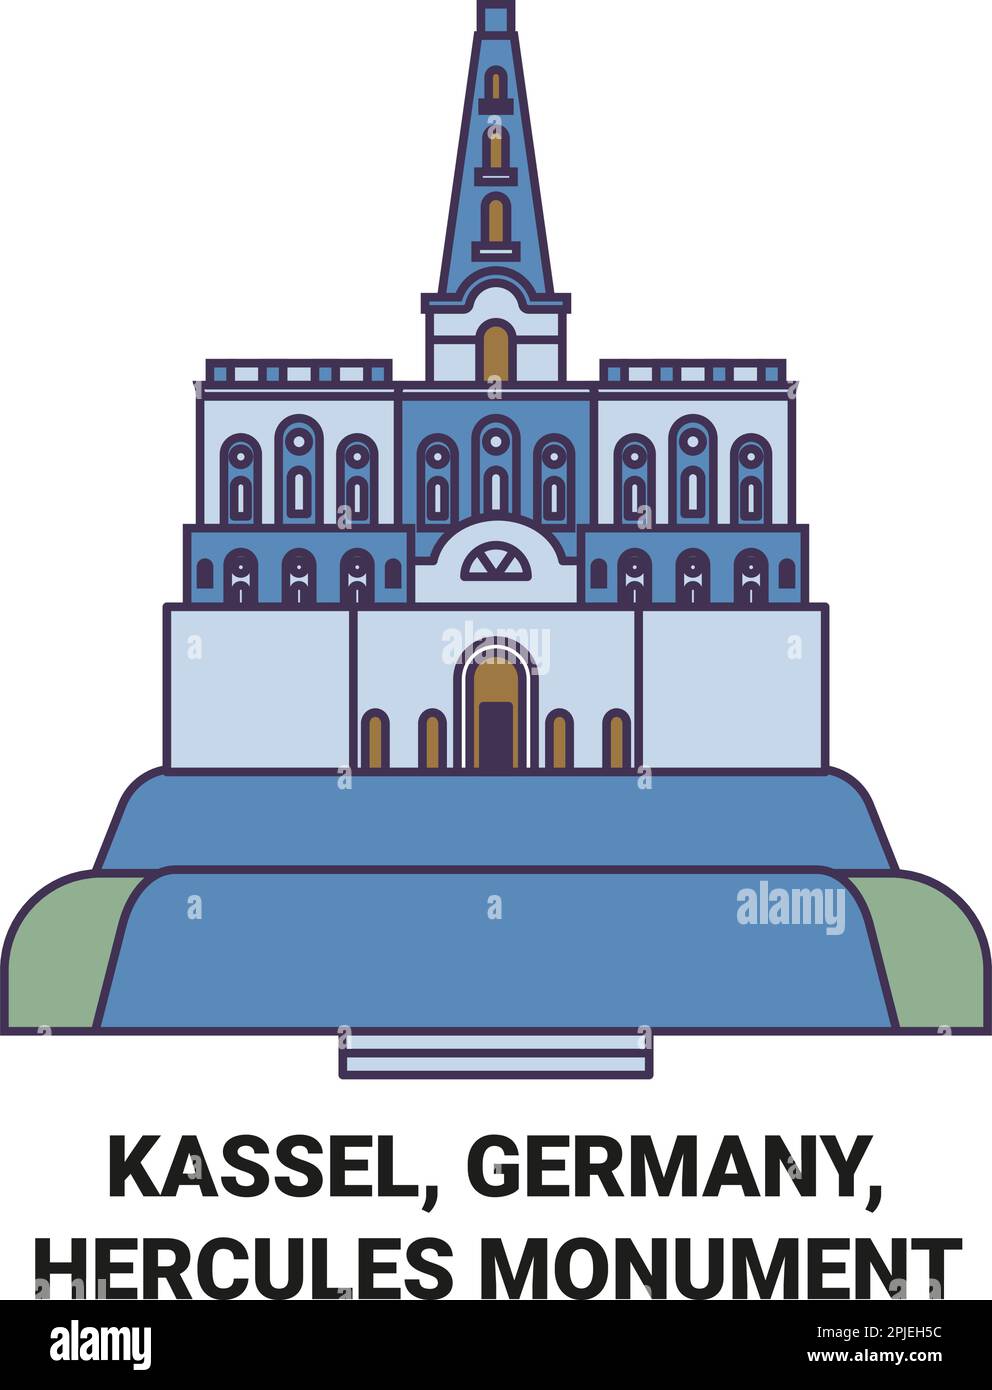 Germany, Kassel, Hercules Monument travel landmark vector illustration Stock Vector